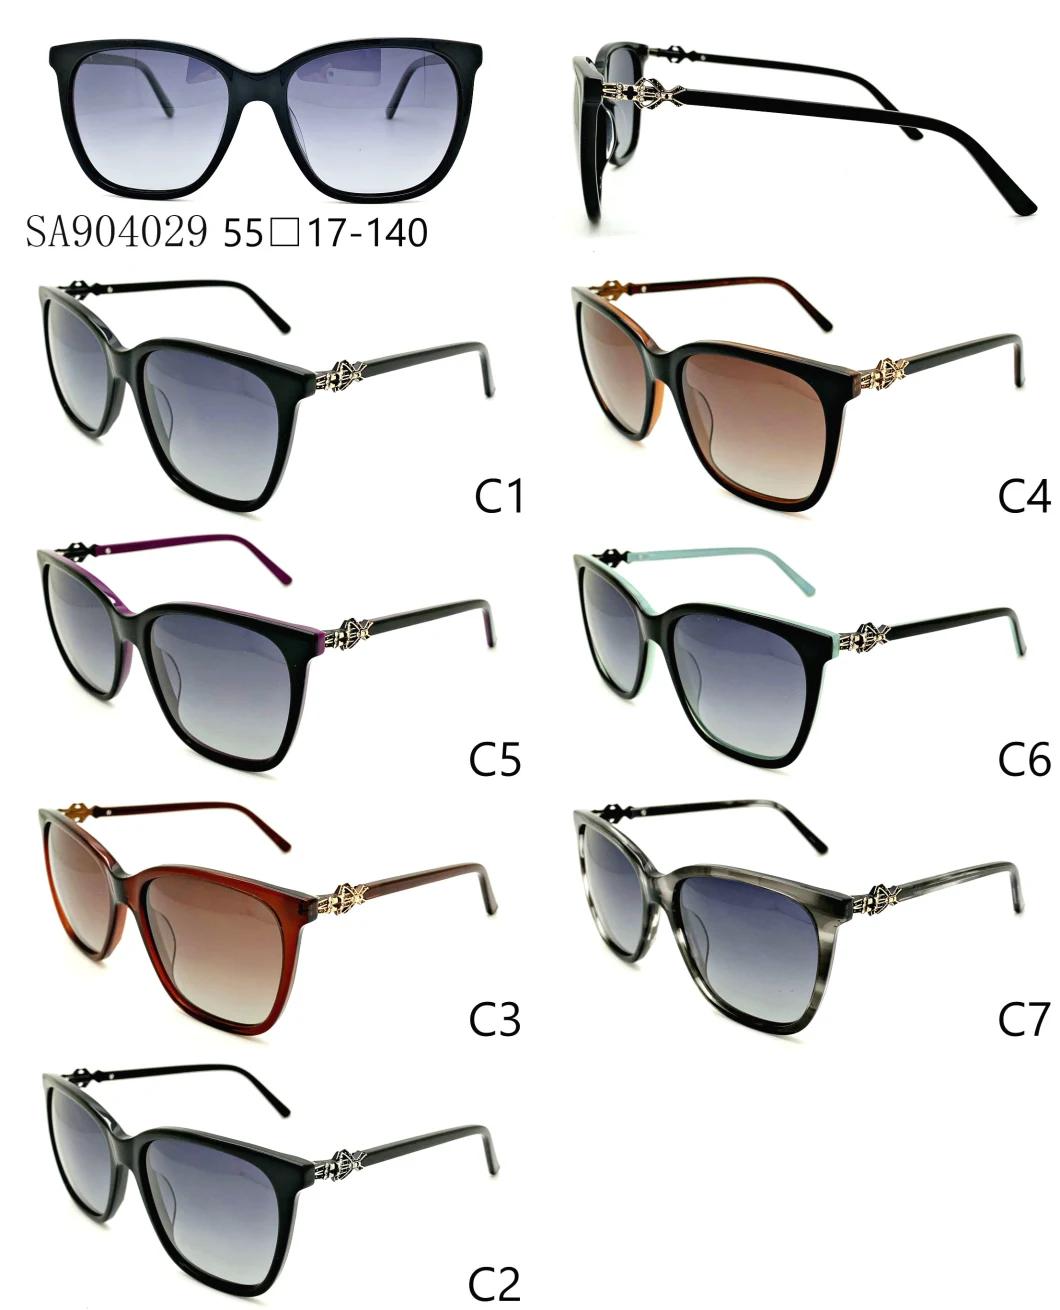 Decorate Fashion Acetate Sunglasses in Stock